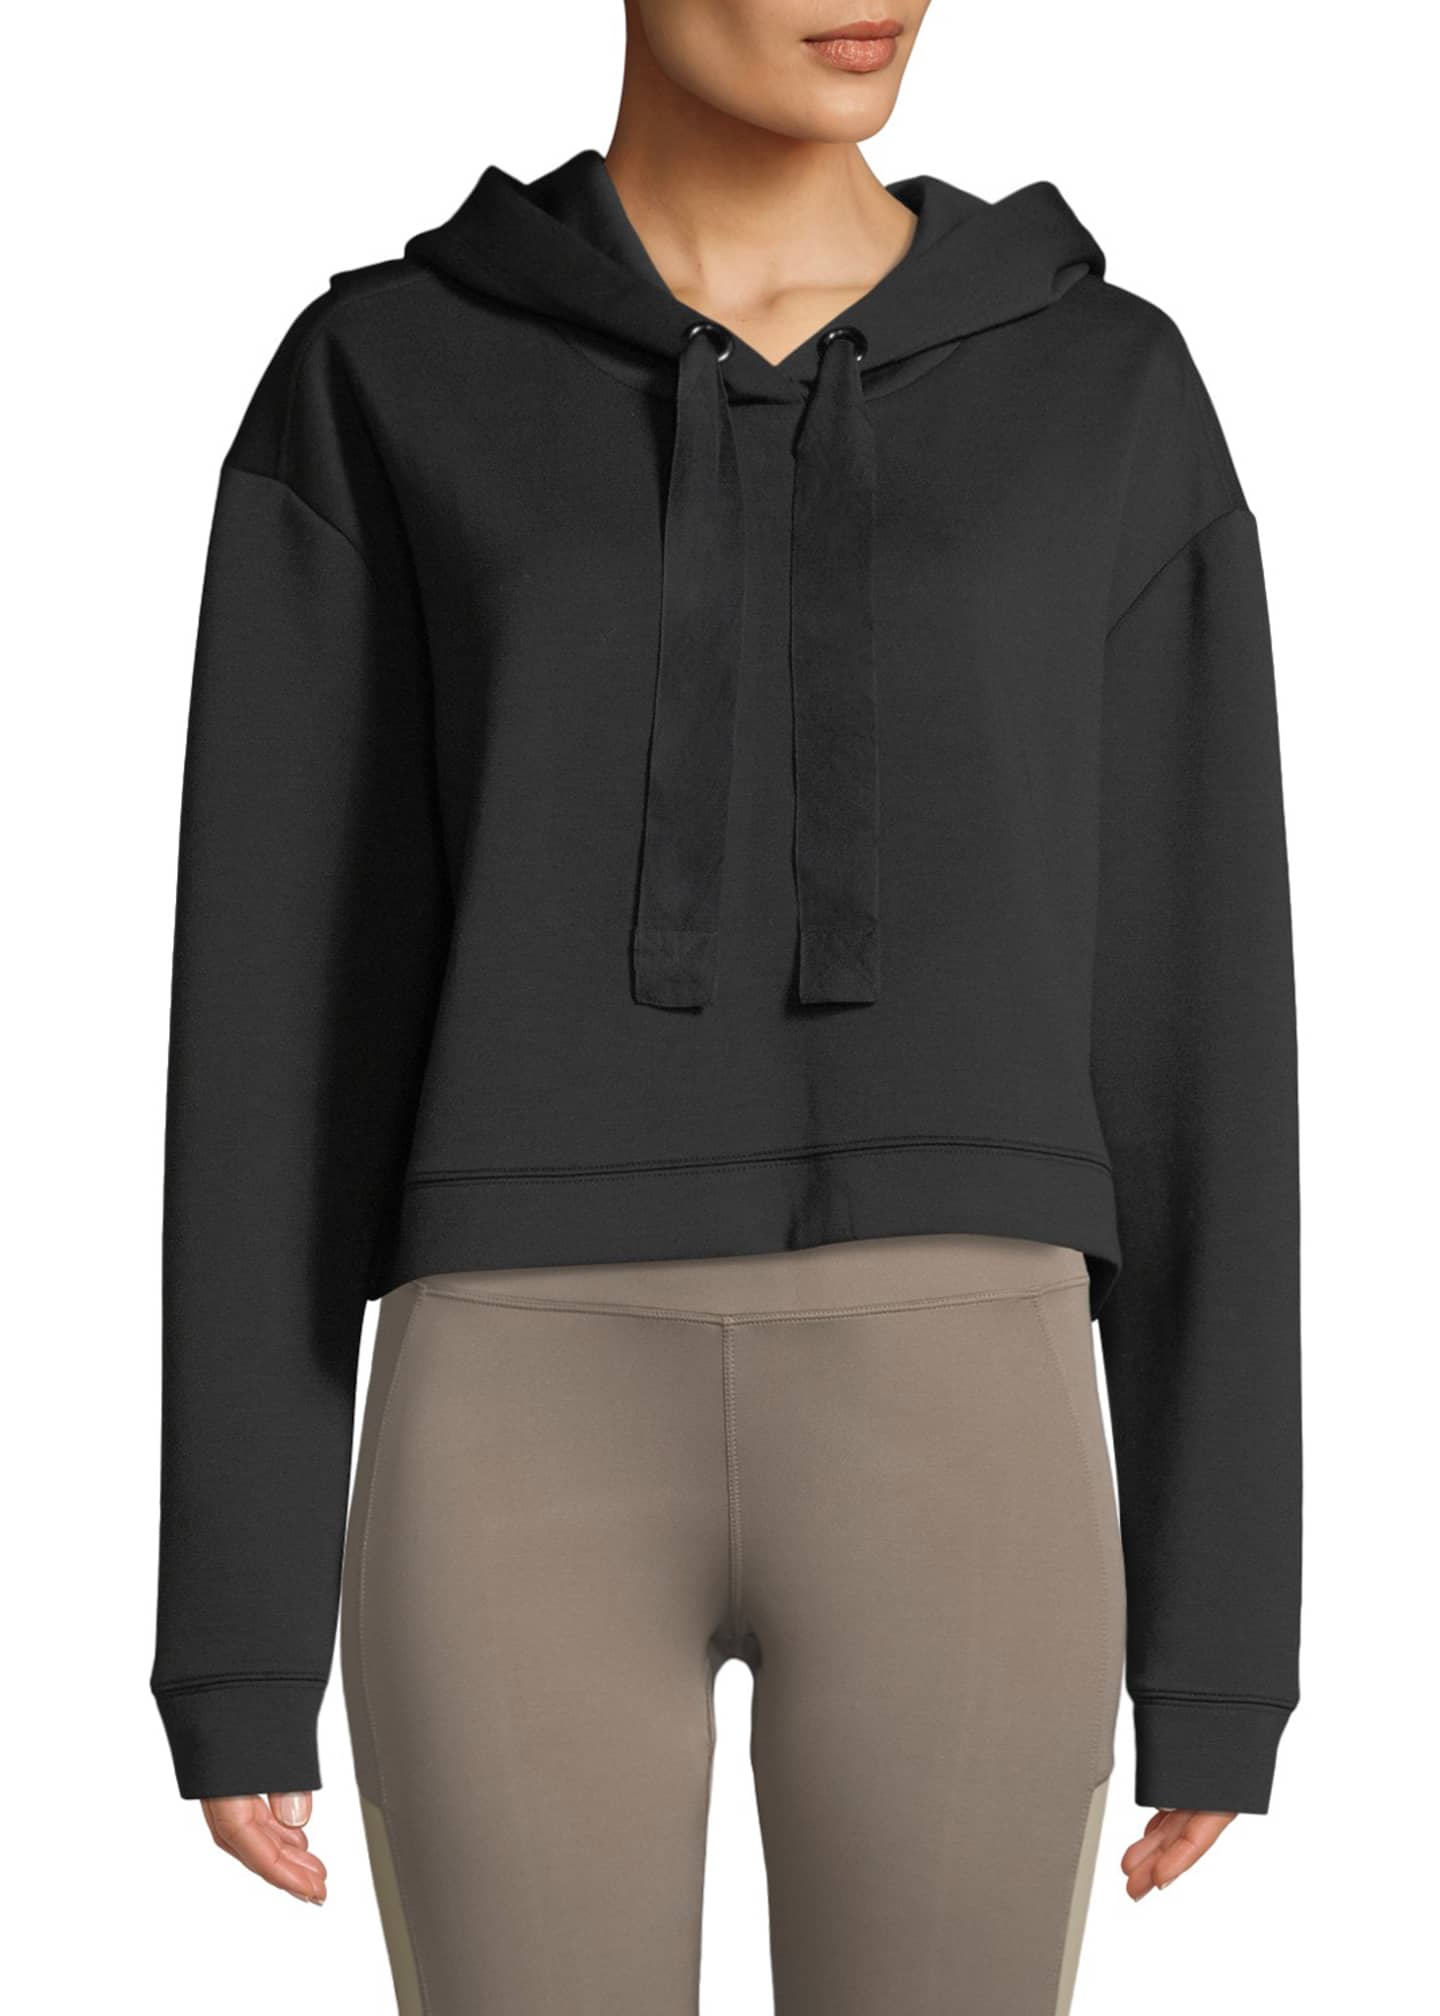 Nylora Morrison Cropped Activewear Hoodie Sweatshirt Top - Bergdorf Goodman